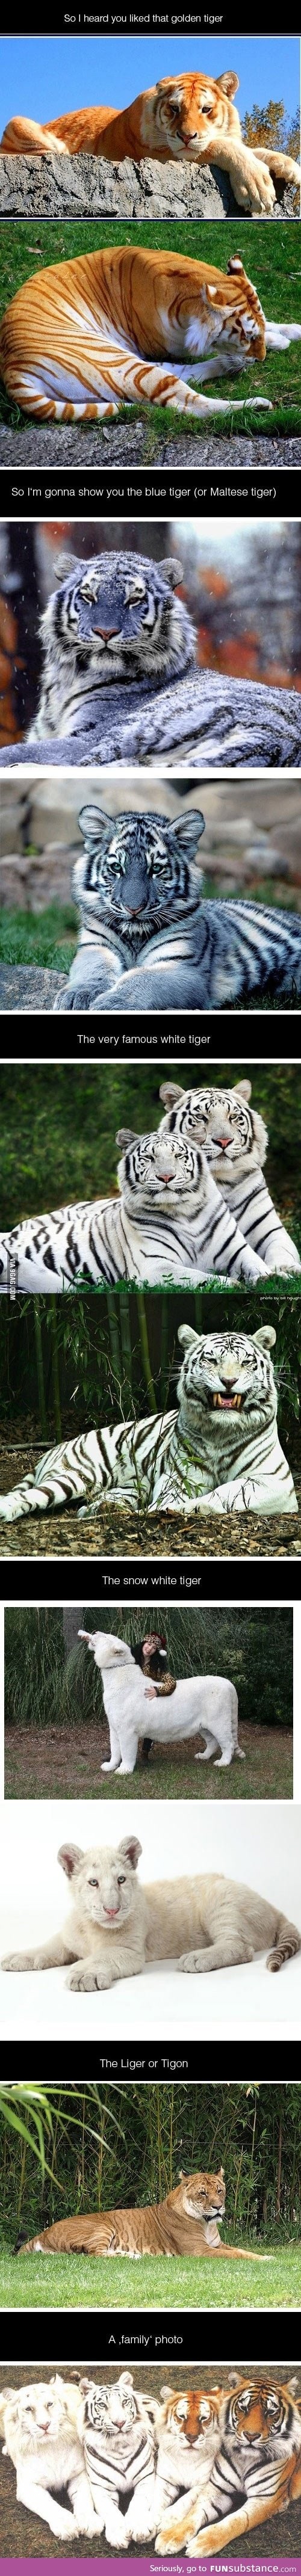 I heard you like Tigers...